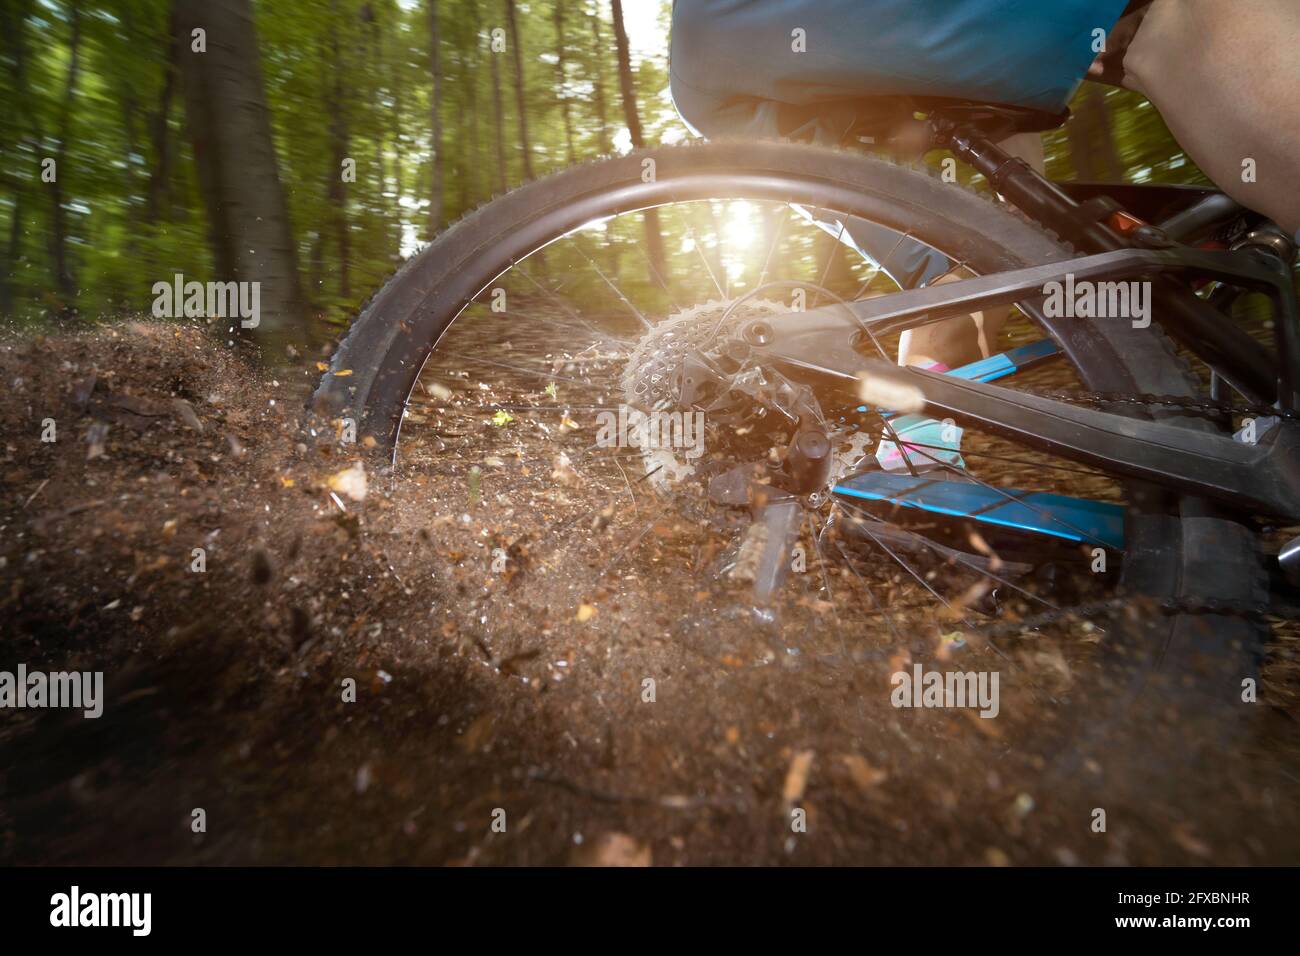 La roue arrière de la bicyclette dérive dans la route de terre en forêt Banque D'Images